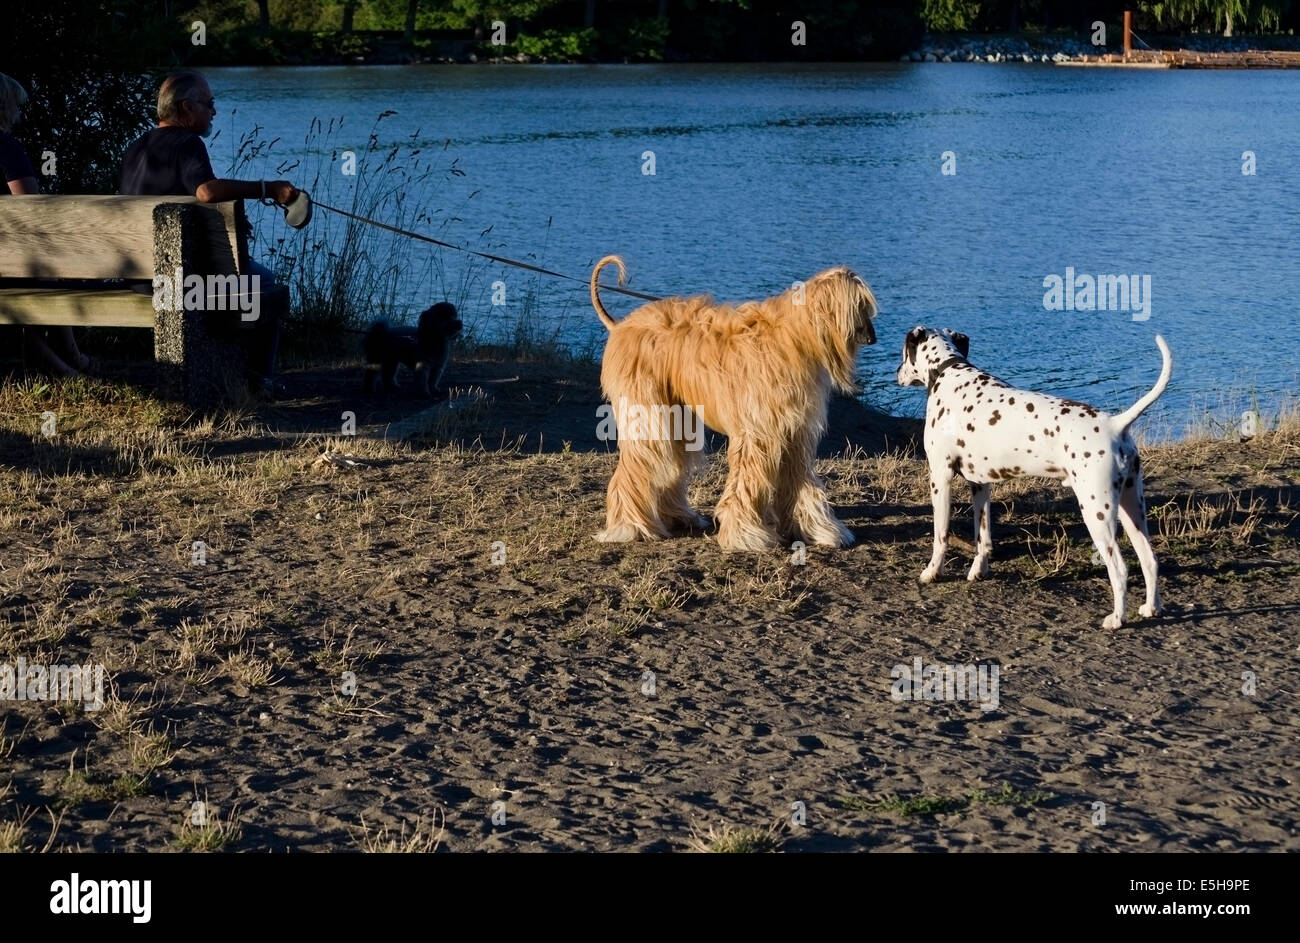 Afghanischer Windhund grüßt Dalmatiner im Park an einem Fluss.  Hunde, die Geselligkeit. Stockfoto